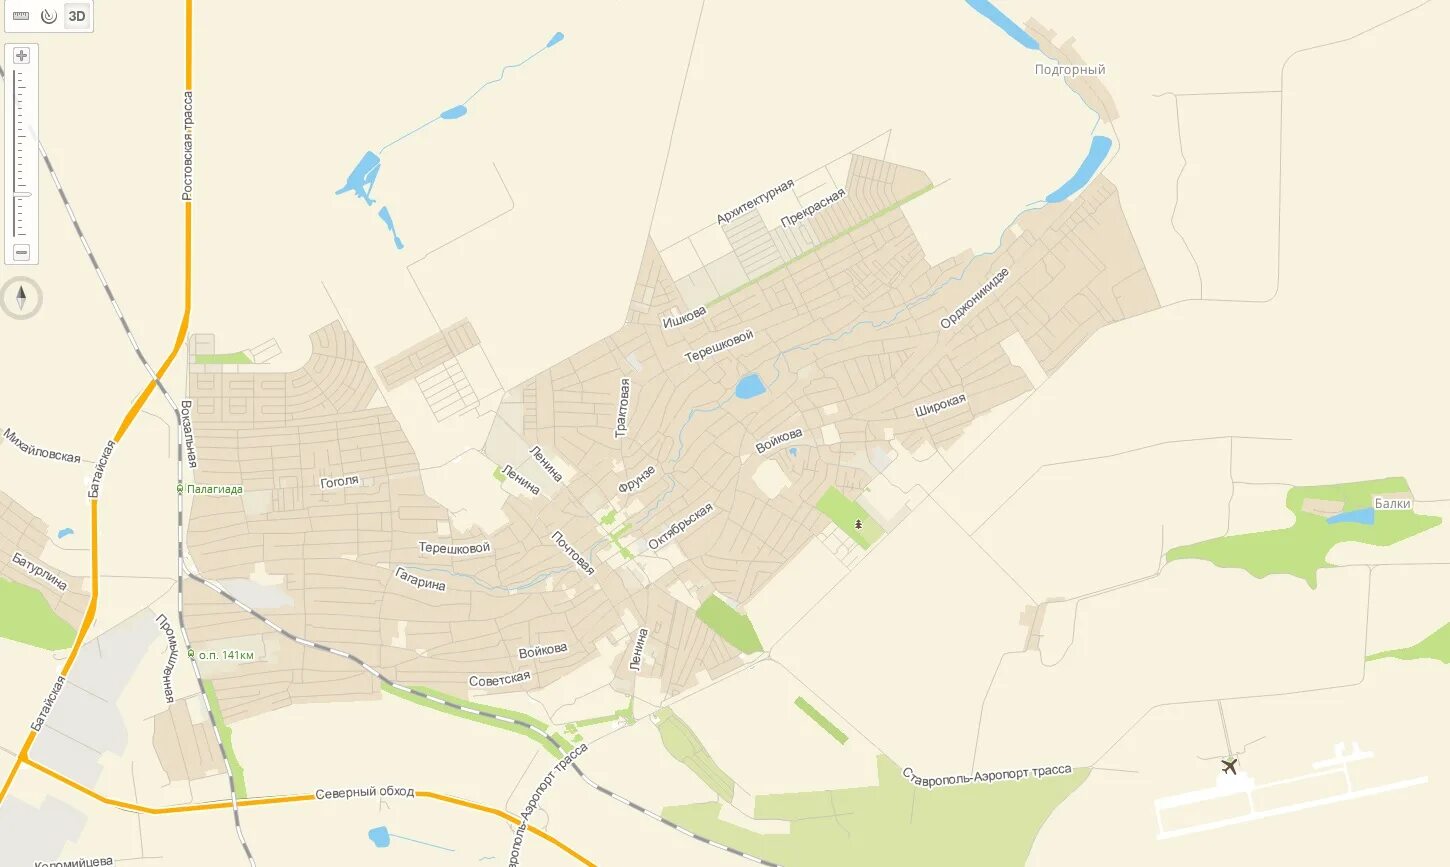 Карта города михайловска